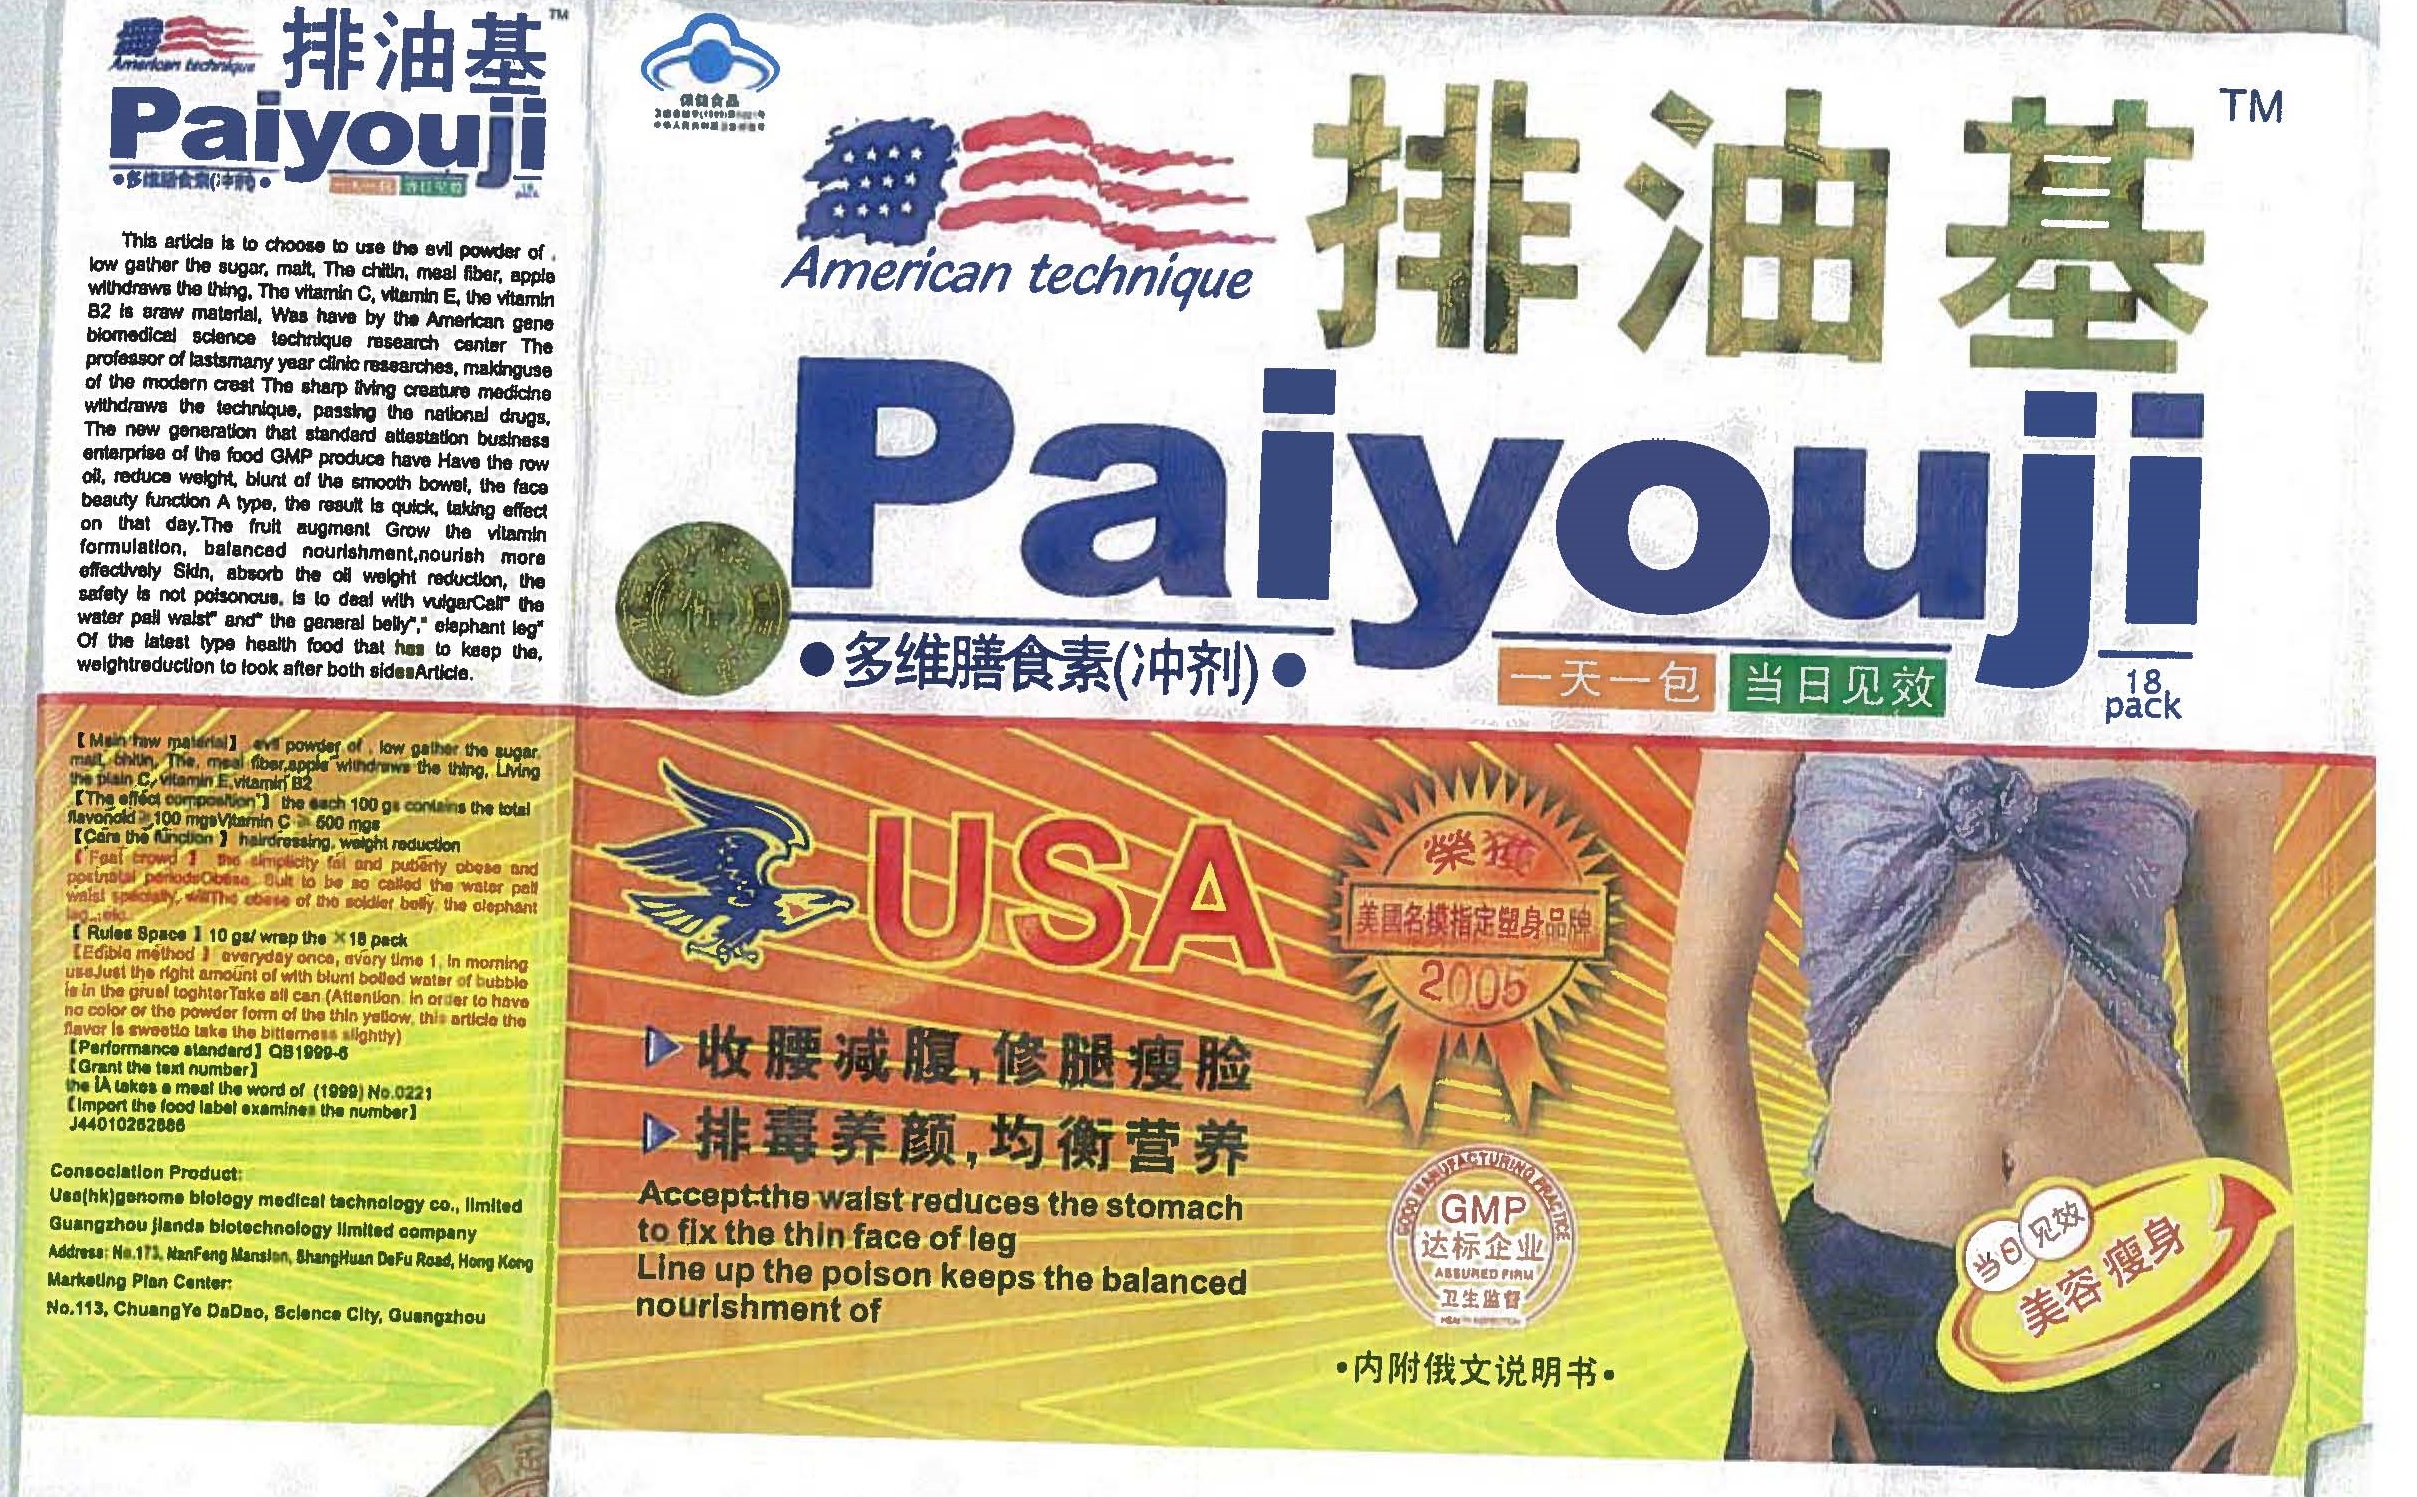 Billede af det ulovlige produkt: American Technique Paiyouji USA